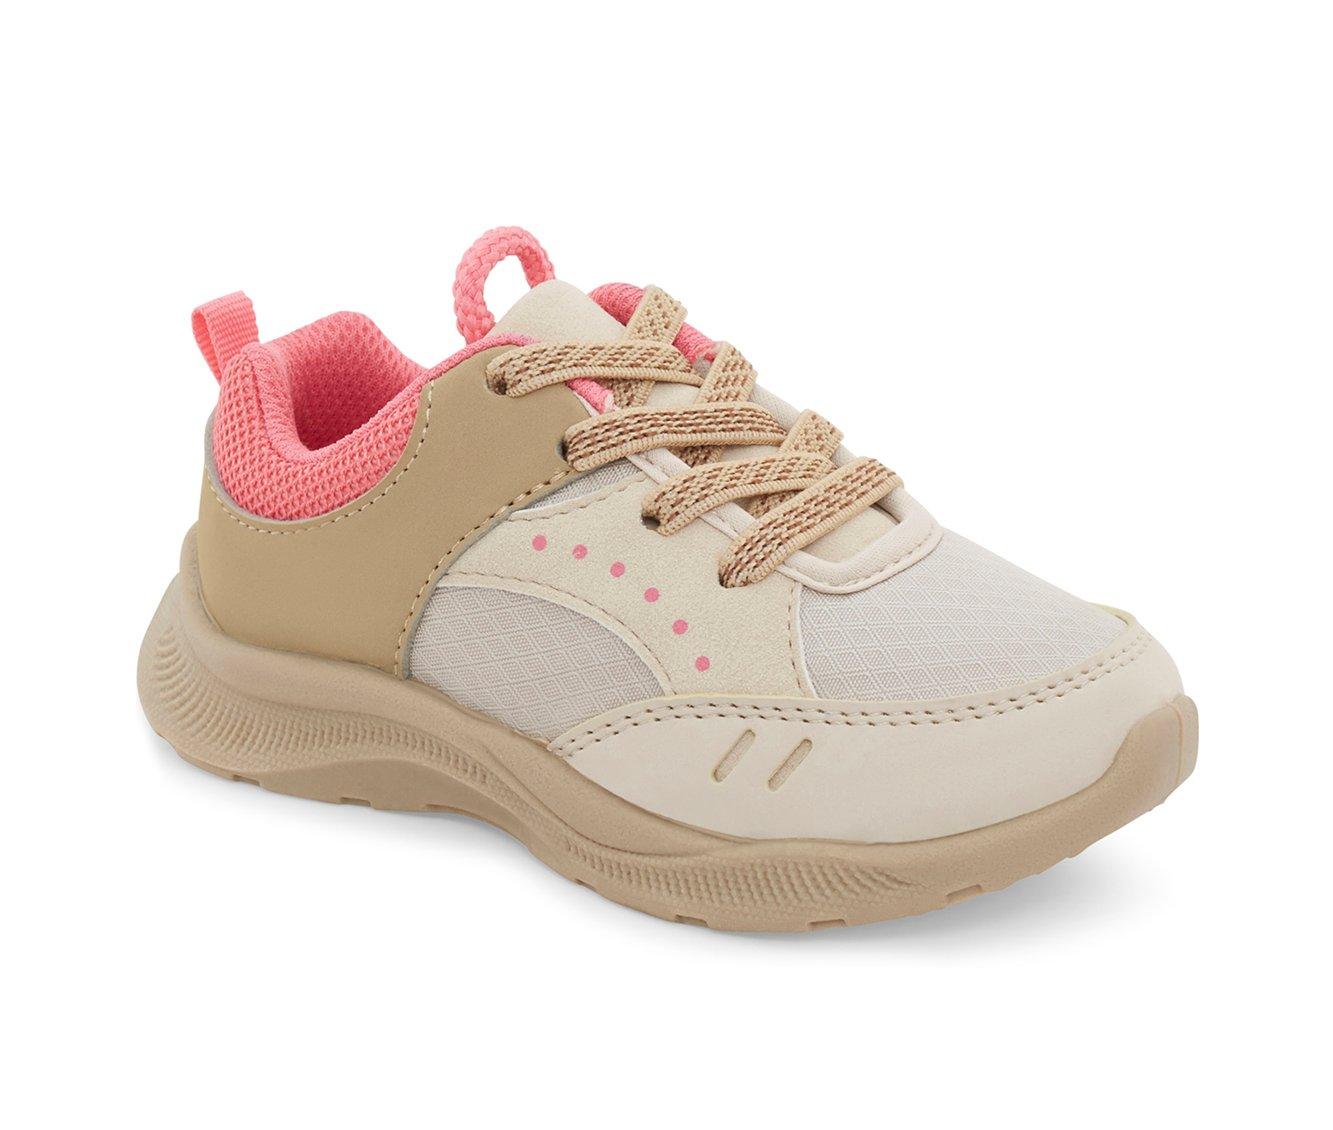 Girls' OshKosh B'gosh Toddler & Little Kid Fable Sneakers